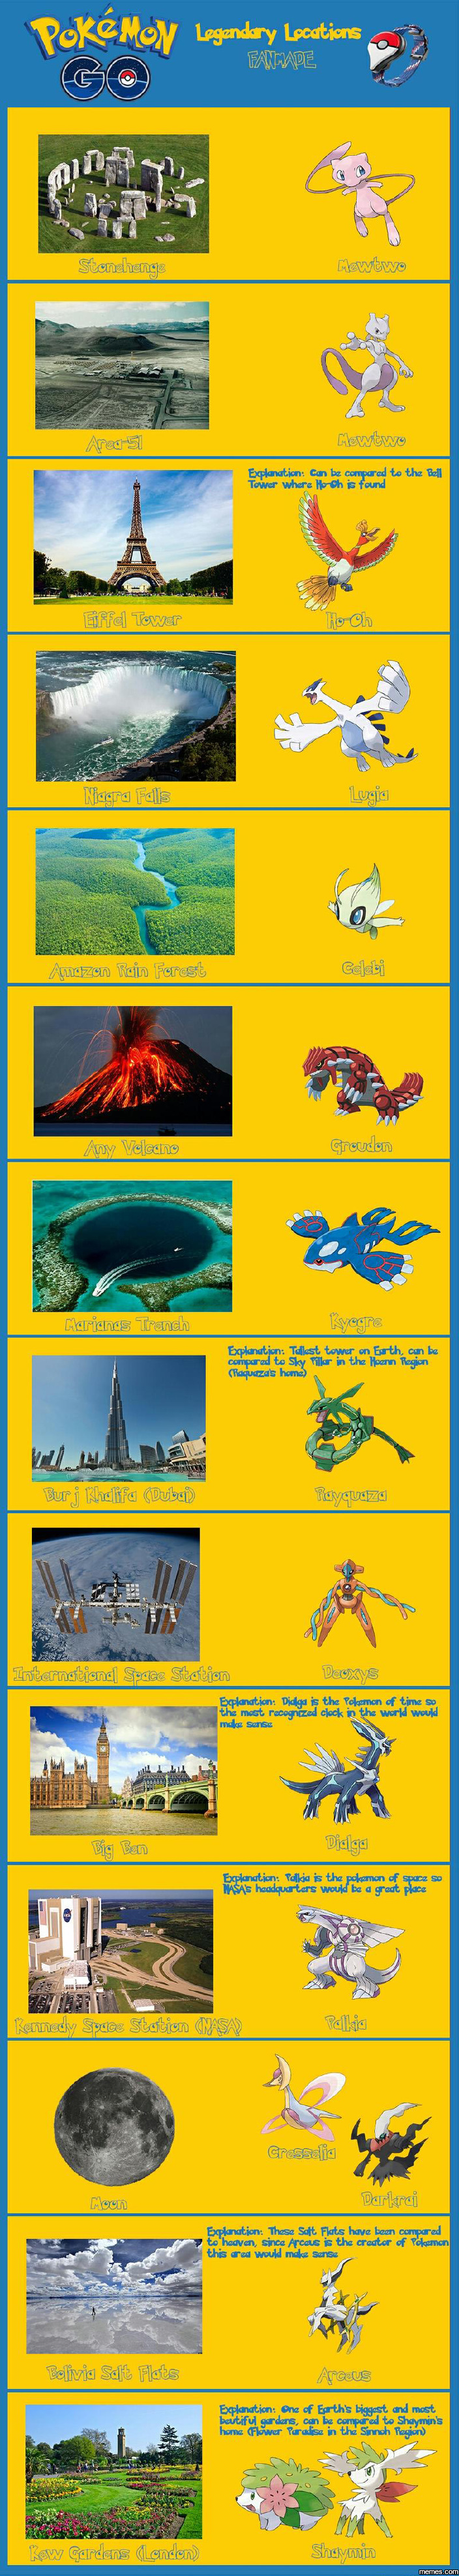 Pokemon GO Legendary locations